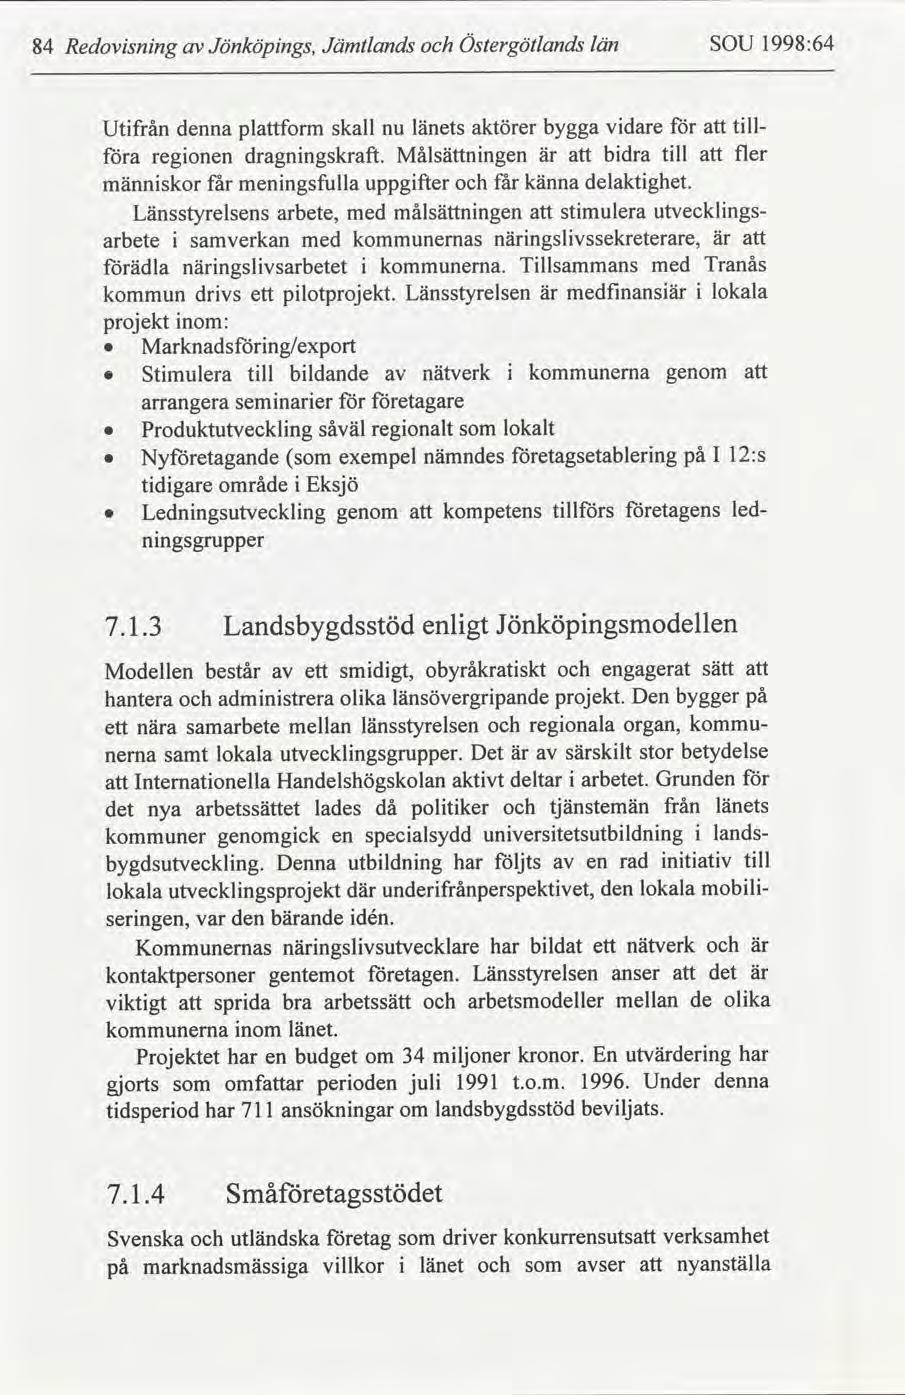 Redovsnng 84 Jönköpngs, Jämtlands Östergötlands län SOU 1998:64 männskor arbete får menngsfulla uppgfter får känna Länsstyrelsens arbete, med målsättnngen ädla kommun delaktghet.